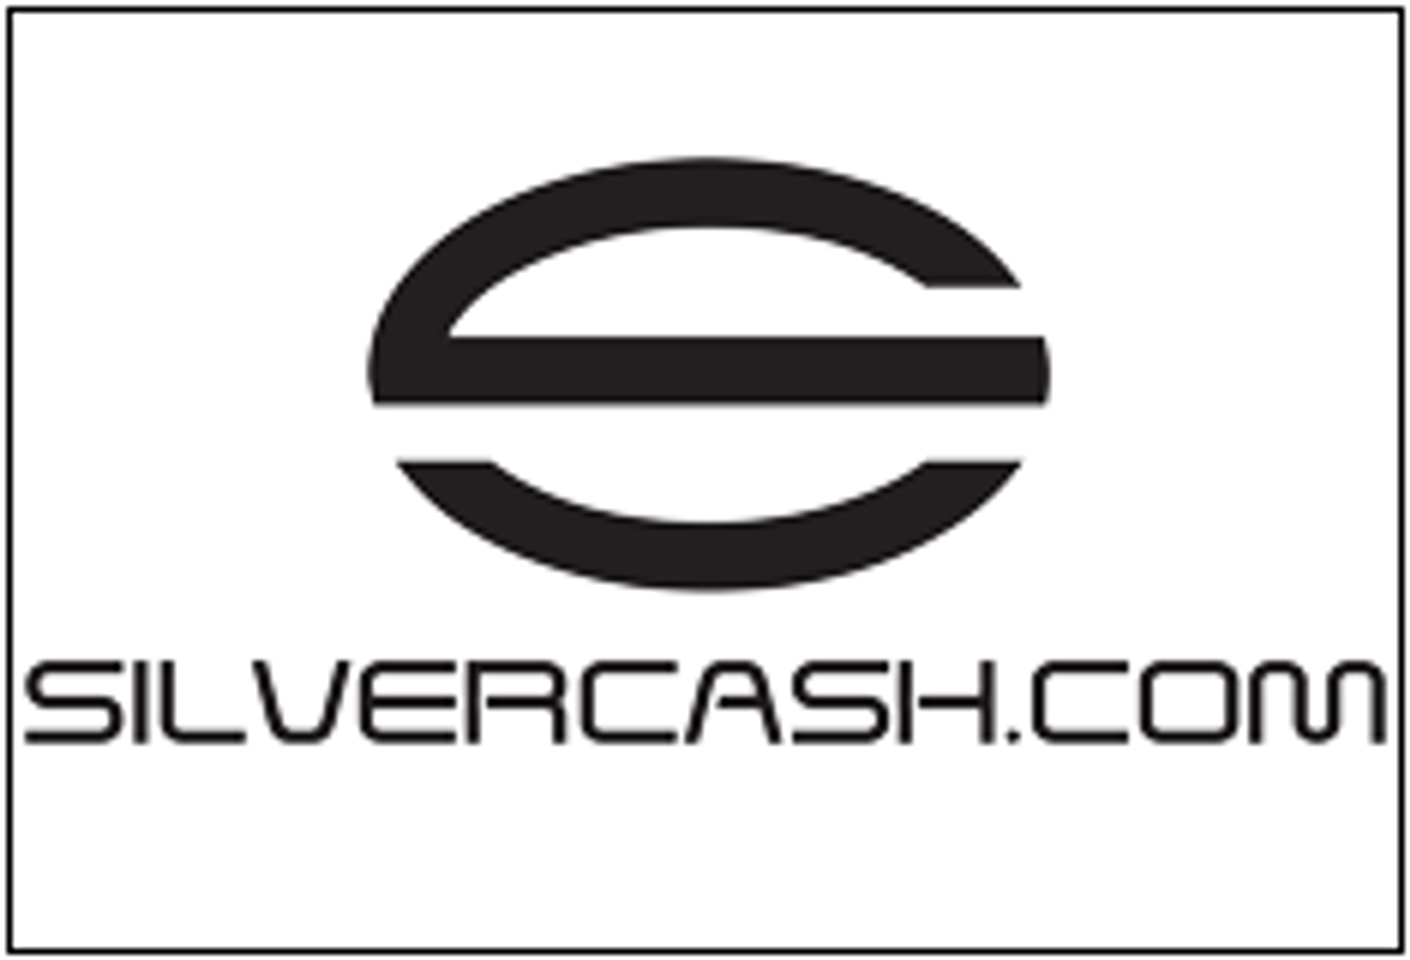 Company Profile: Silvercash